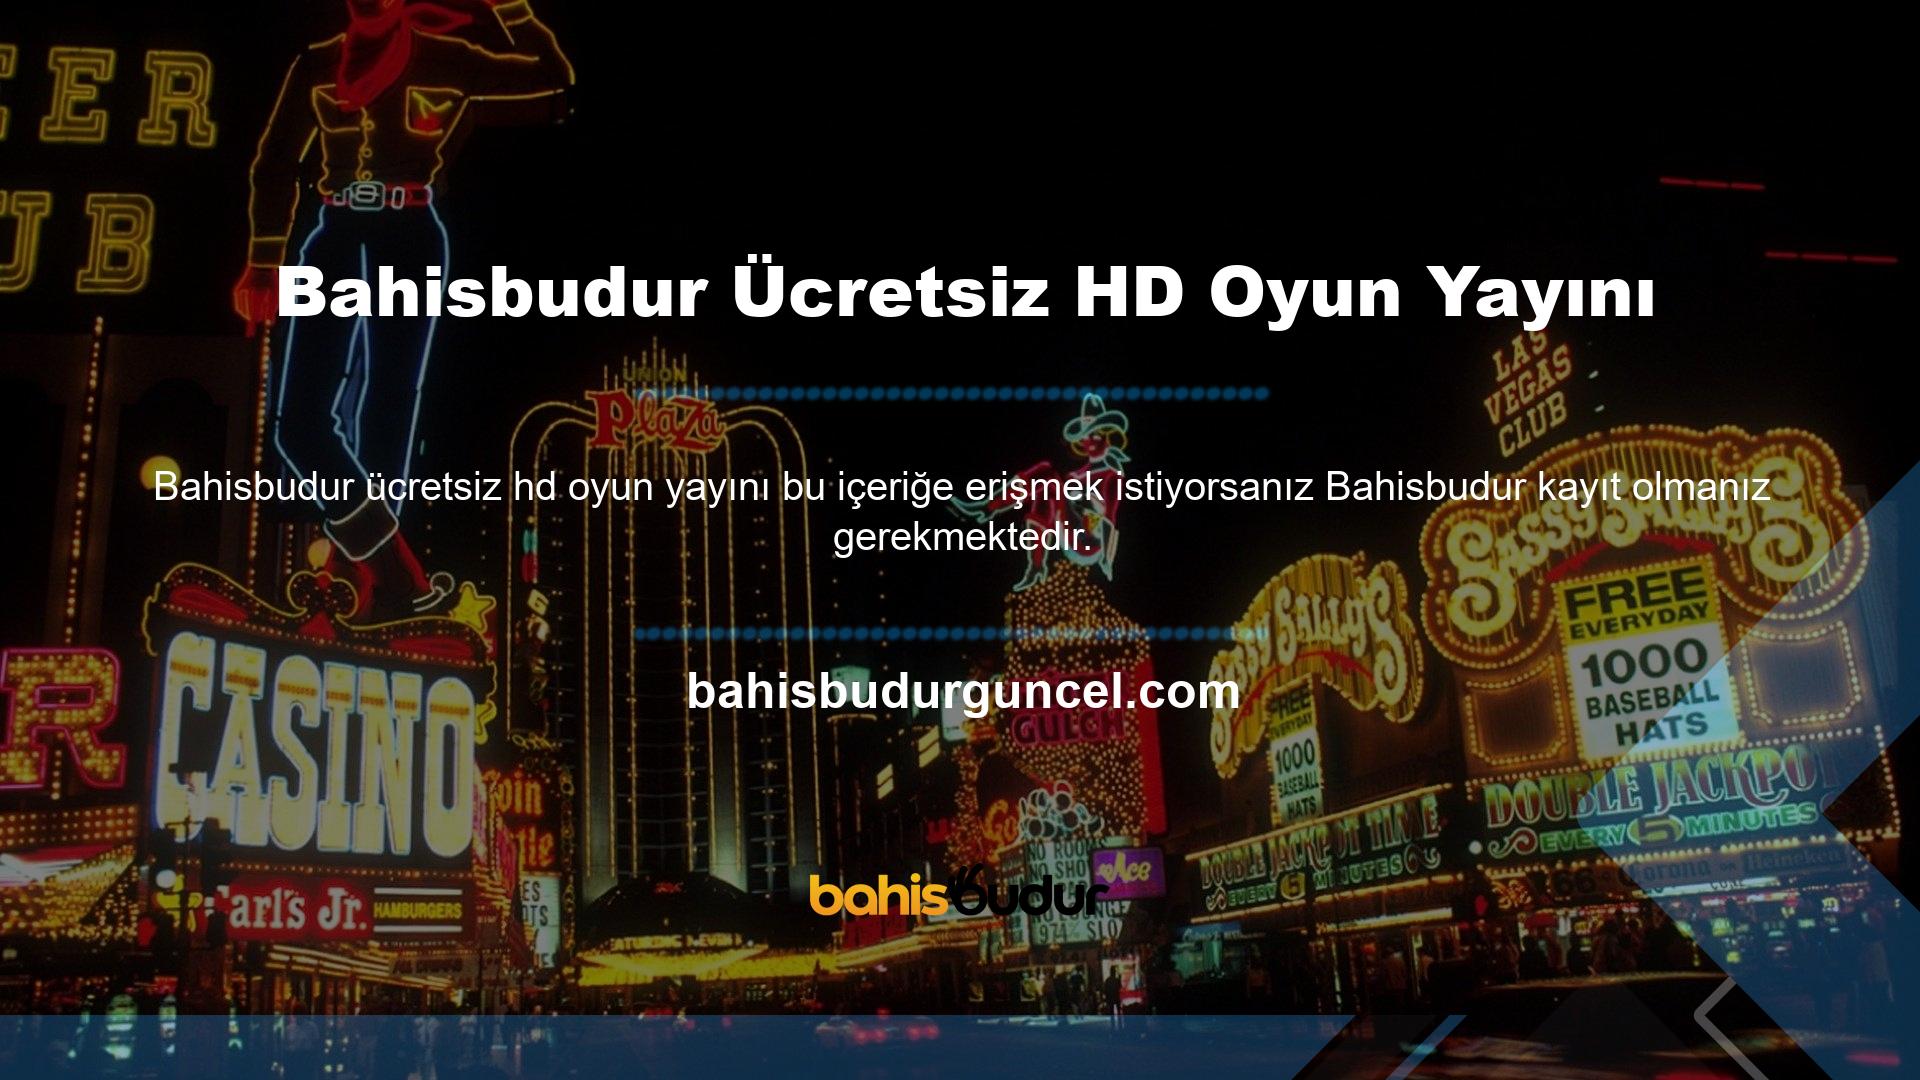 Bahisbudur kullanışlı bir hizmet olarak üyelerine ücretsiz maç yayınları sunmaktadır